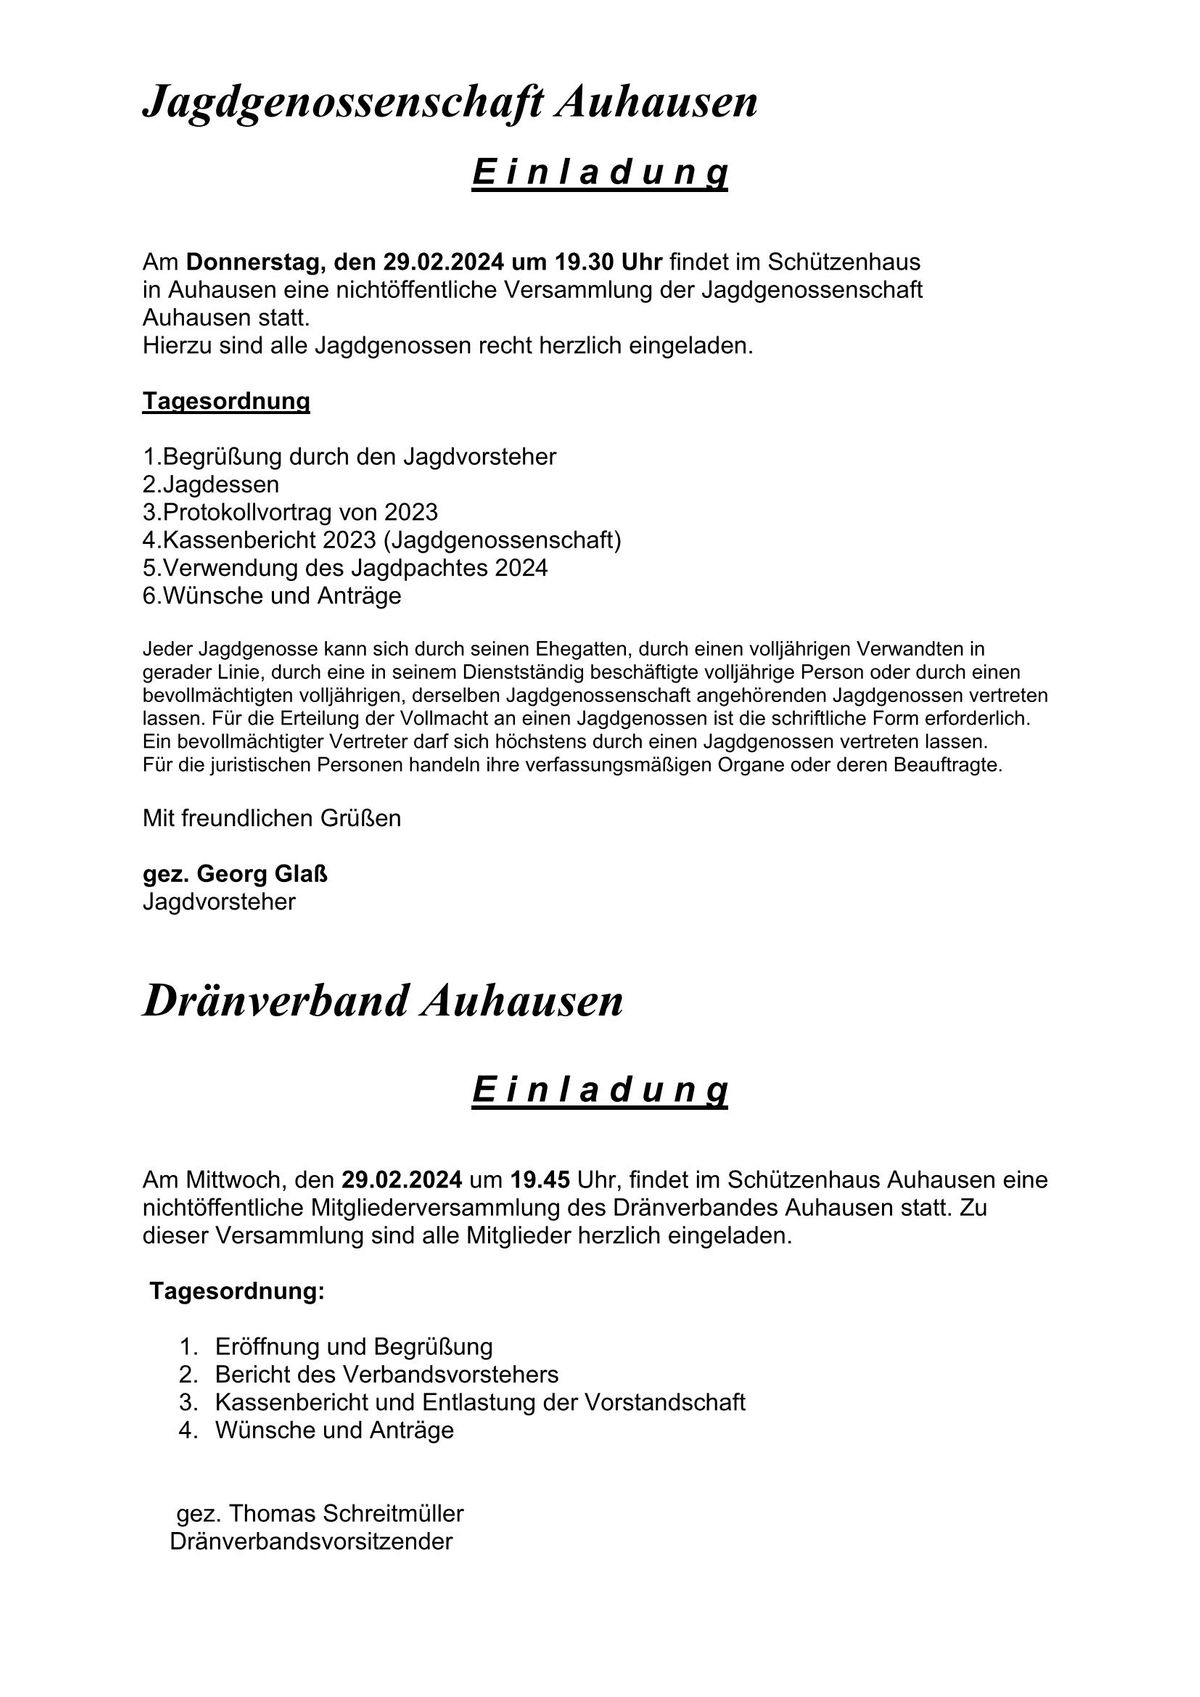 Einladung Jadggenossenschaft Auhausen und Dränverband